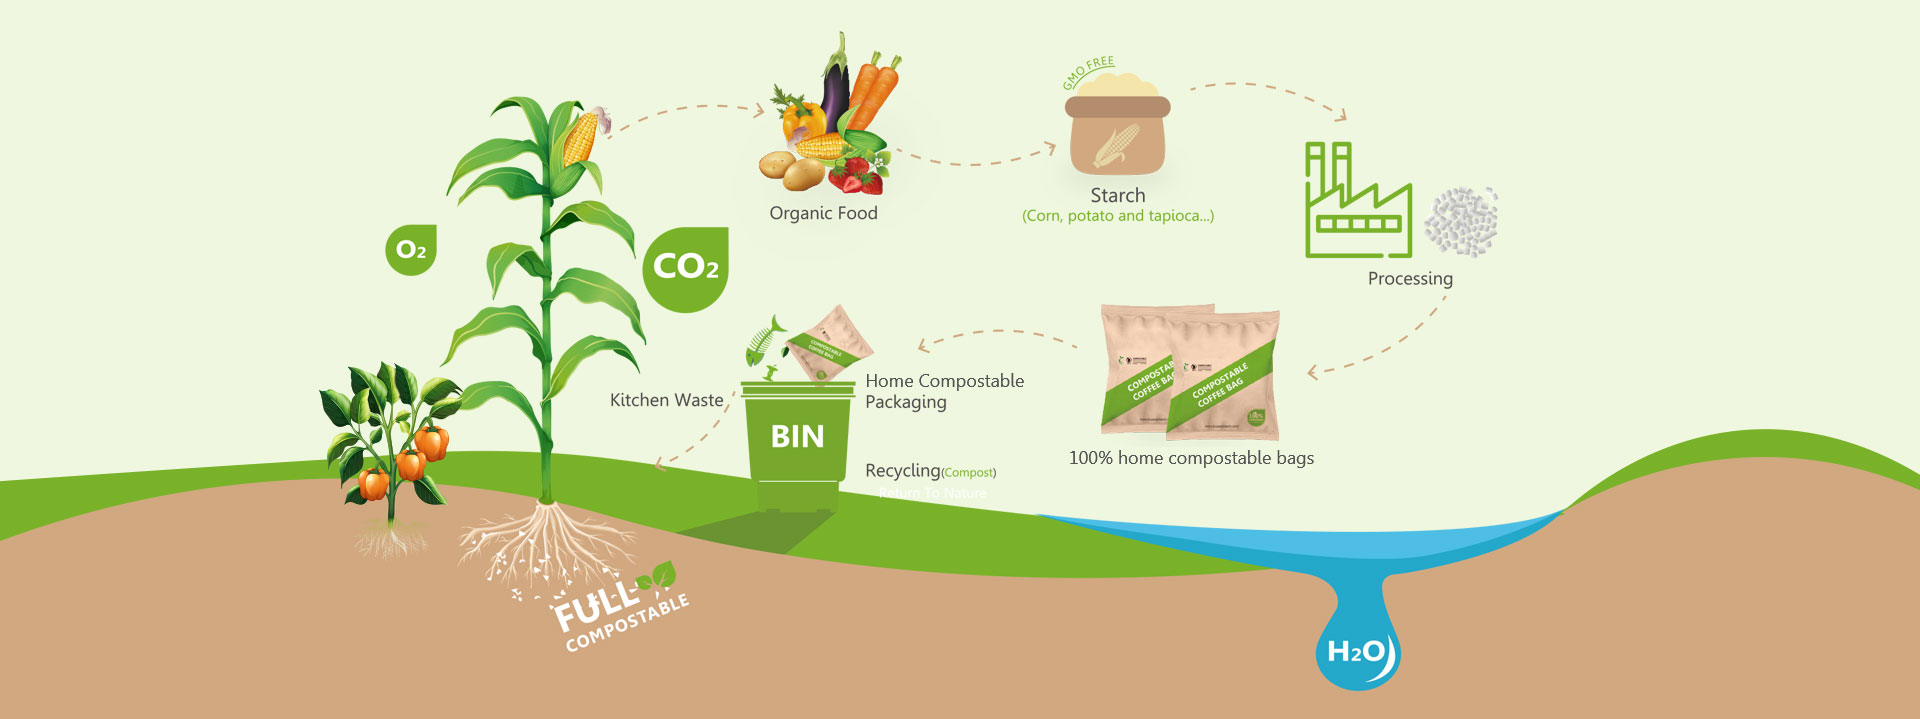 Soluciones ecológicas de embalaje flexible compostable